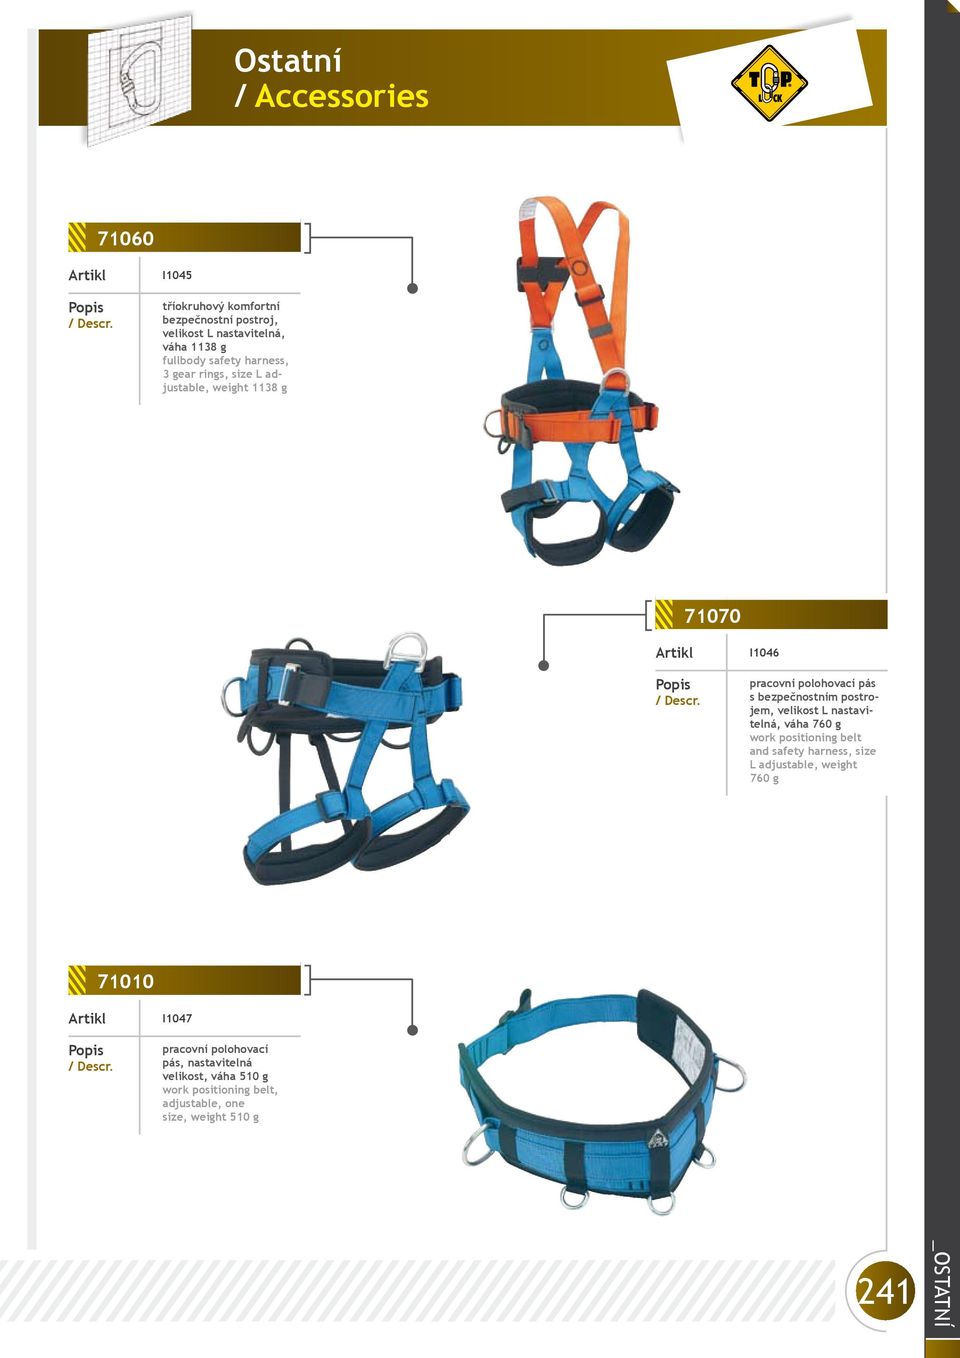 nastavitelná, váha 760 g work positioning belt and safety harness, size L adjustable, weight 760 g 71010 I1047 pracovní